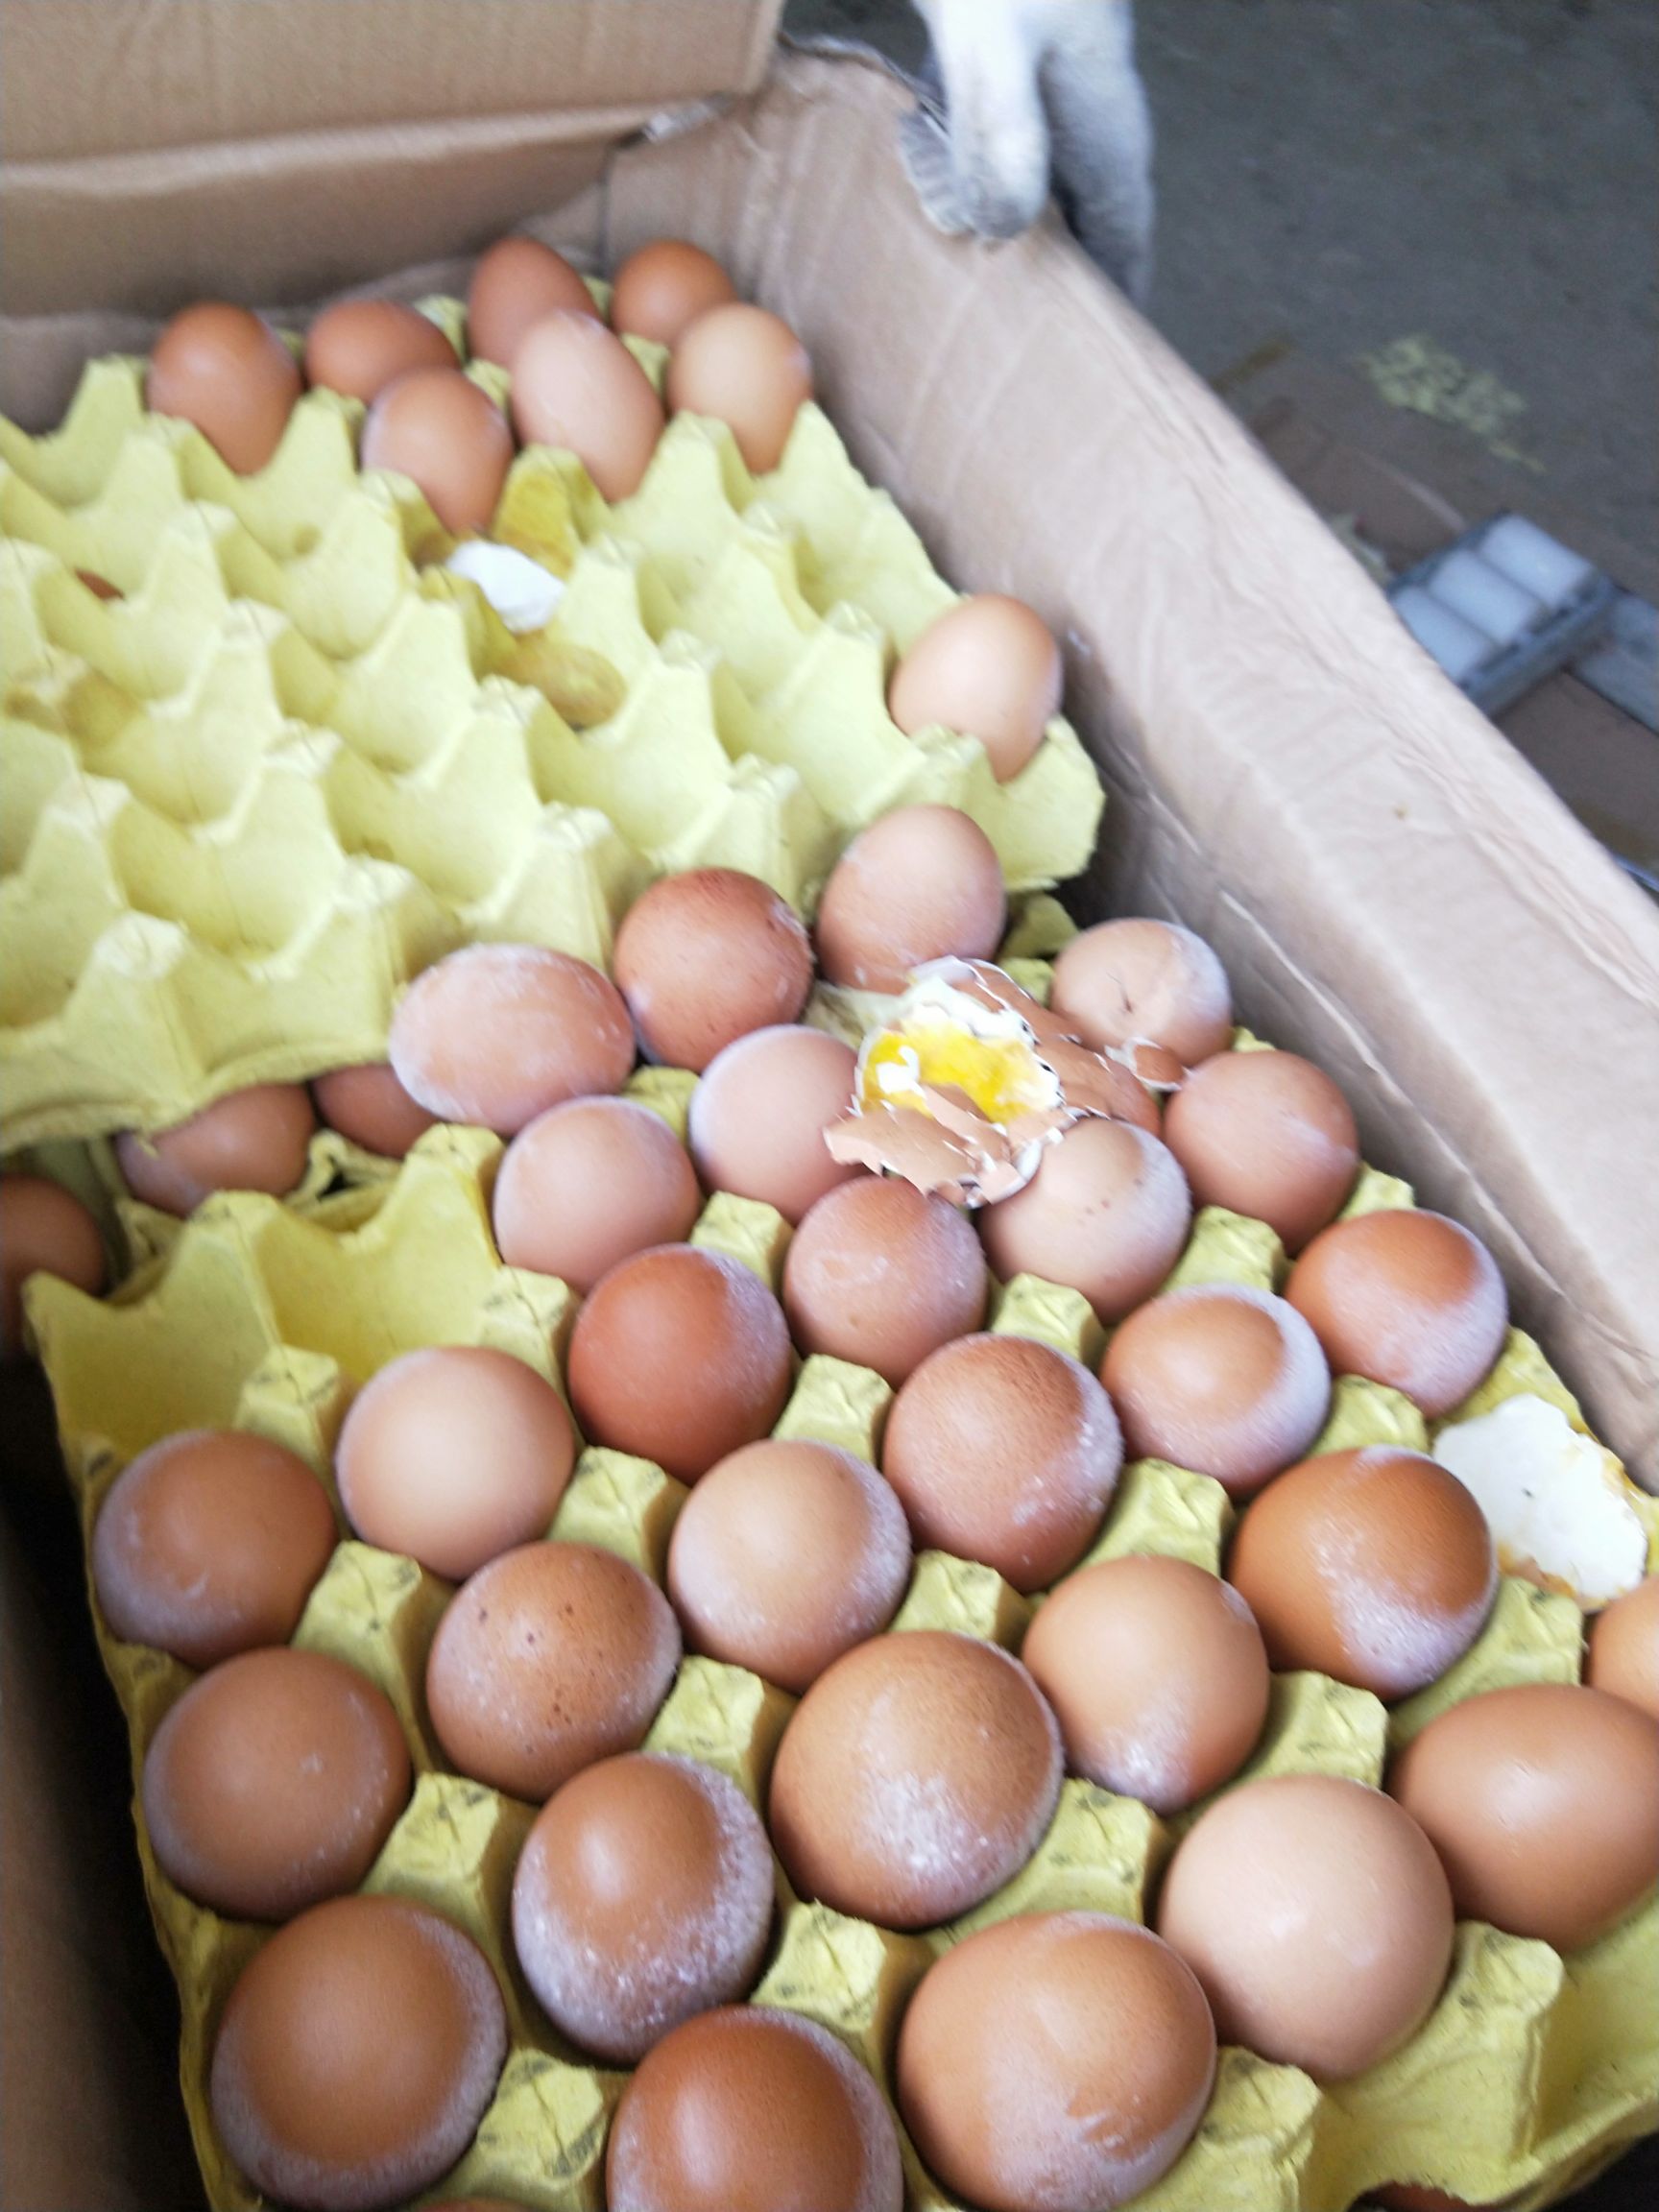 [毛蛋批发] 毛鸡蛋实蛋价格0.16元/个 - 惠农网